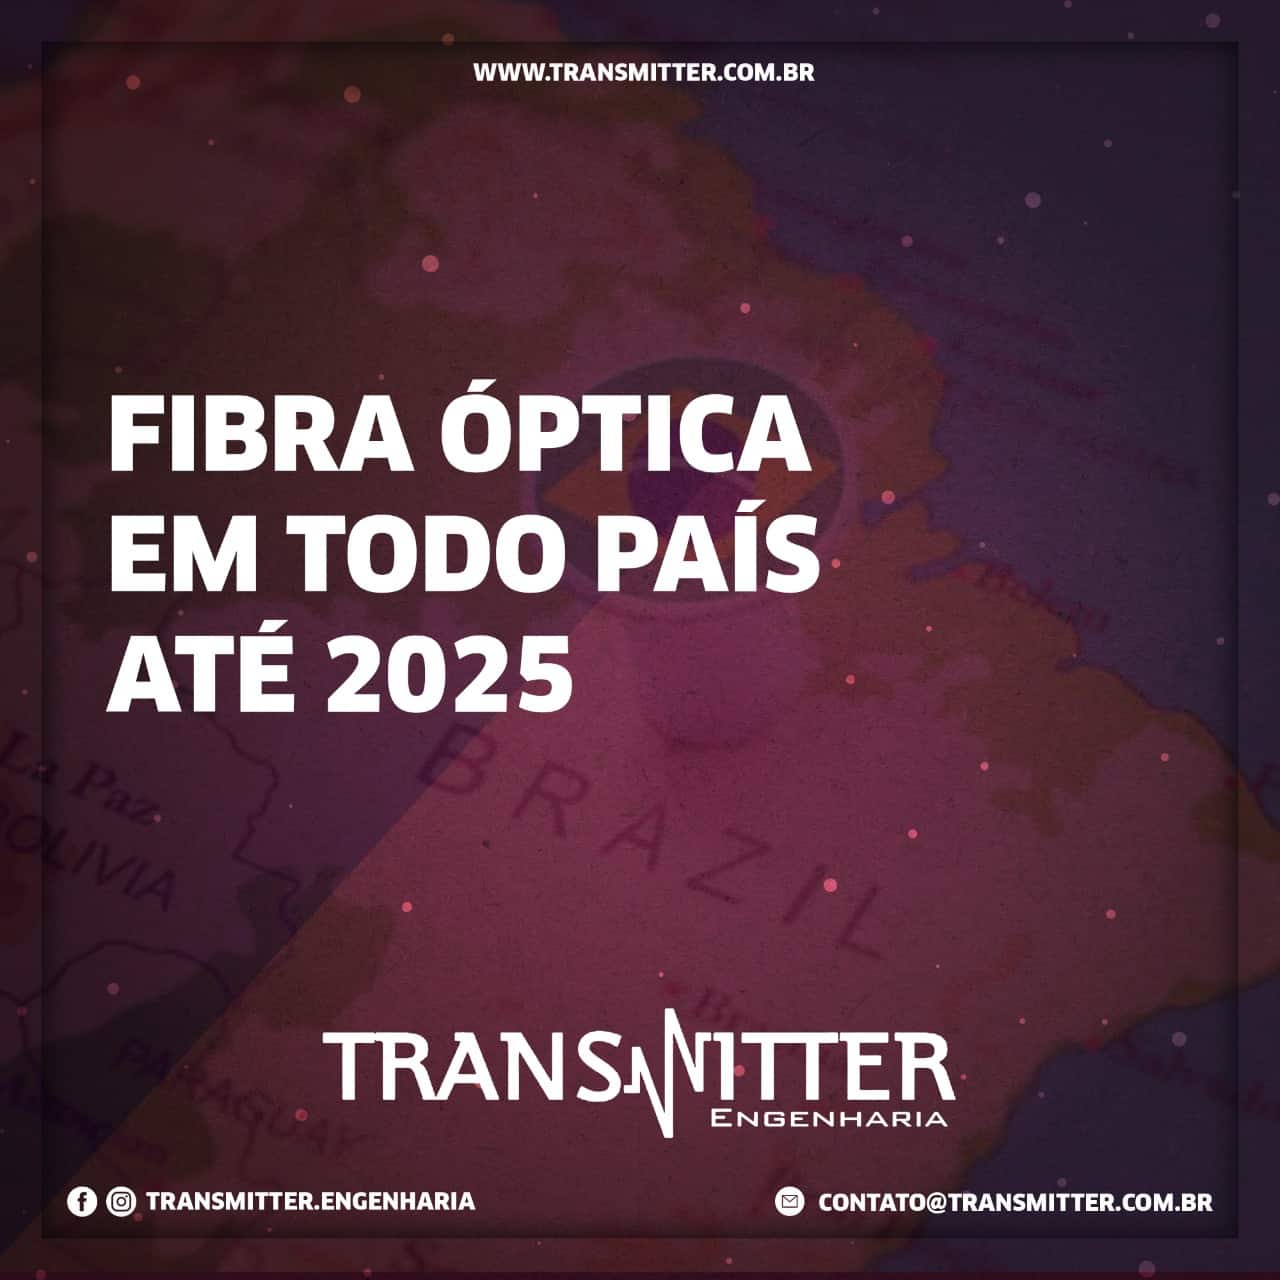 FIBRA ÓPTICA EM TODO PAÍS ATÉ 2025